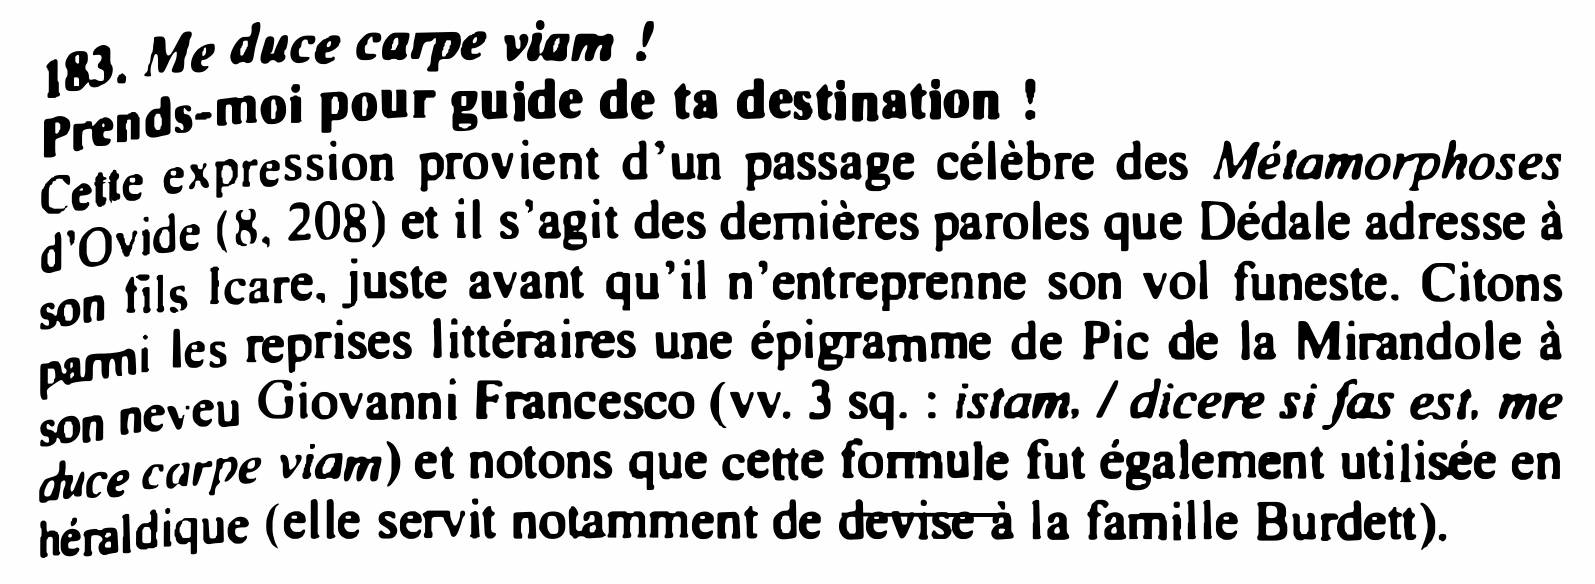 Prévisualisation du document Me duce carpe viam !
83
1

pour guide de ta destination !
moi
�dsrt

ssion provient d'un passage célèbre...